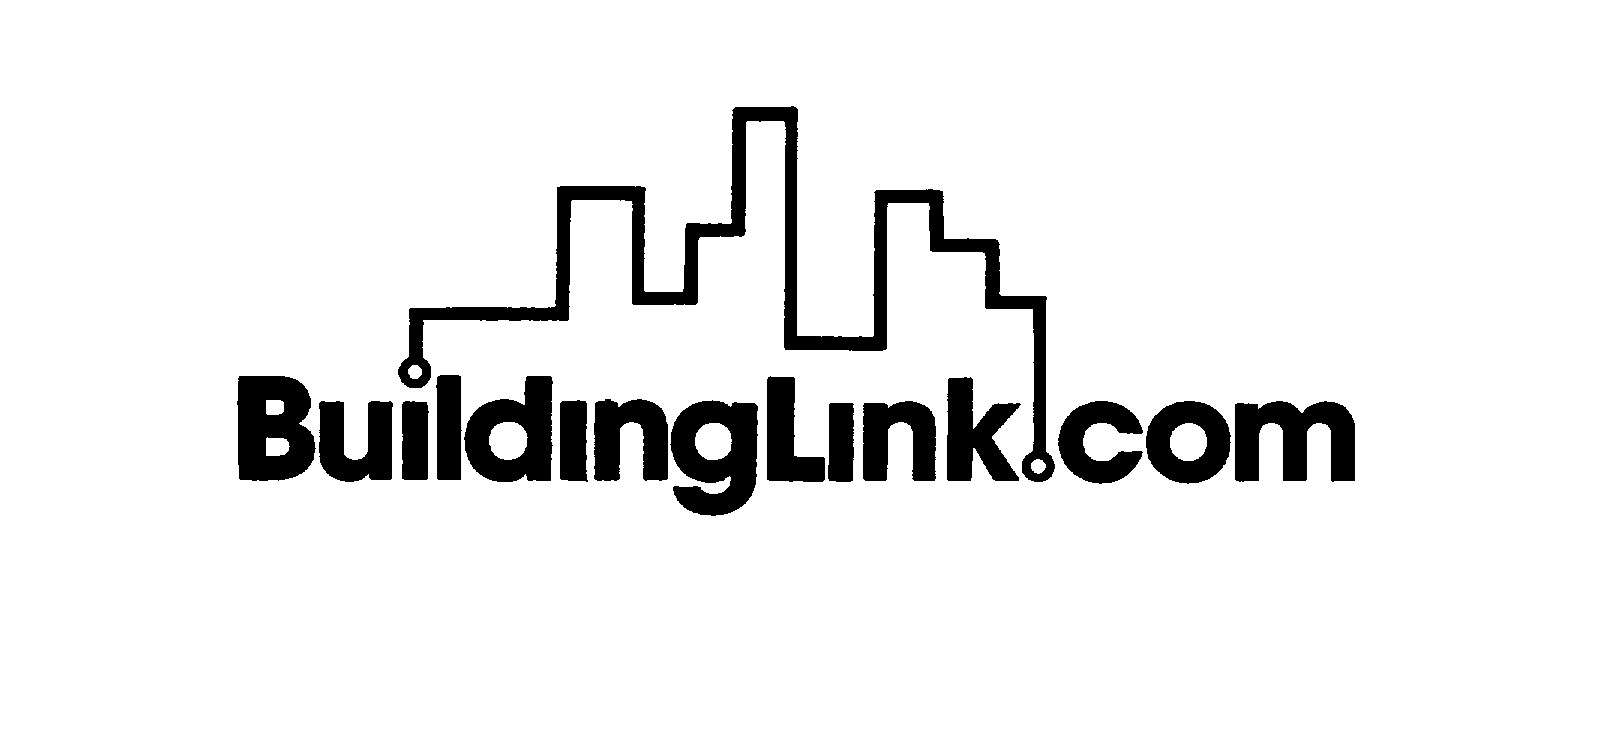  BUILDING LINK.COM